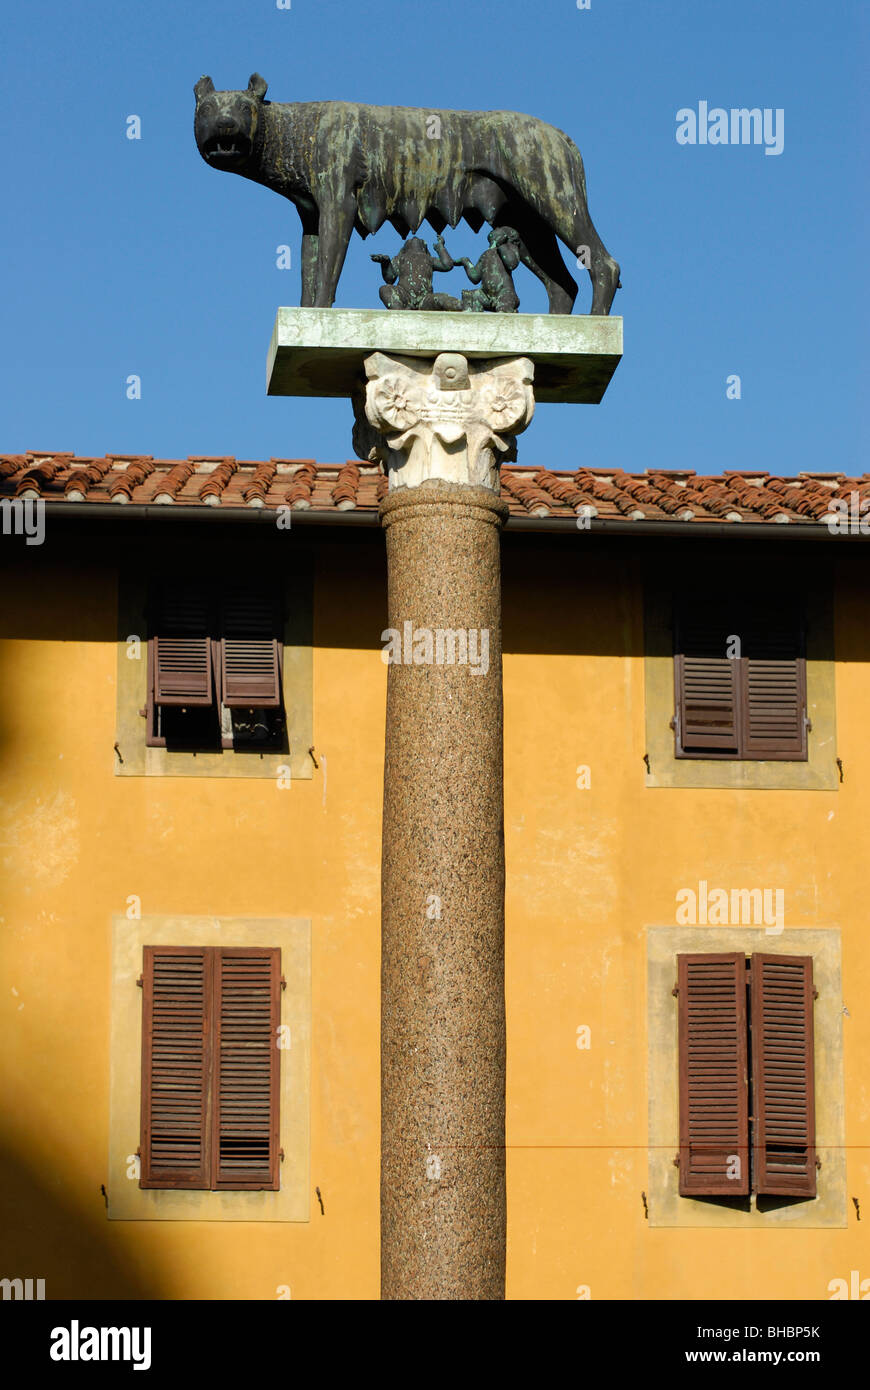 Statua di Romolo e Remo il lattante sul lupo nella Piazza dei Miracoli accanto alla Torre Pendente di Pisa. Foto Stock